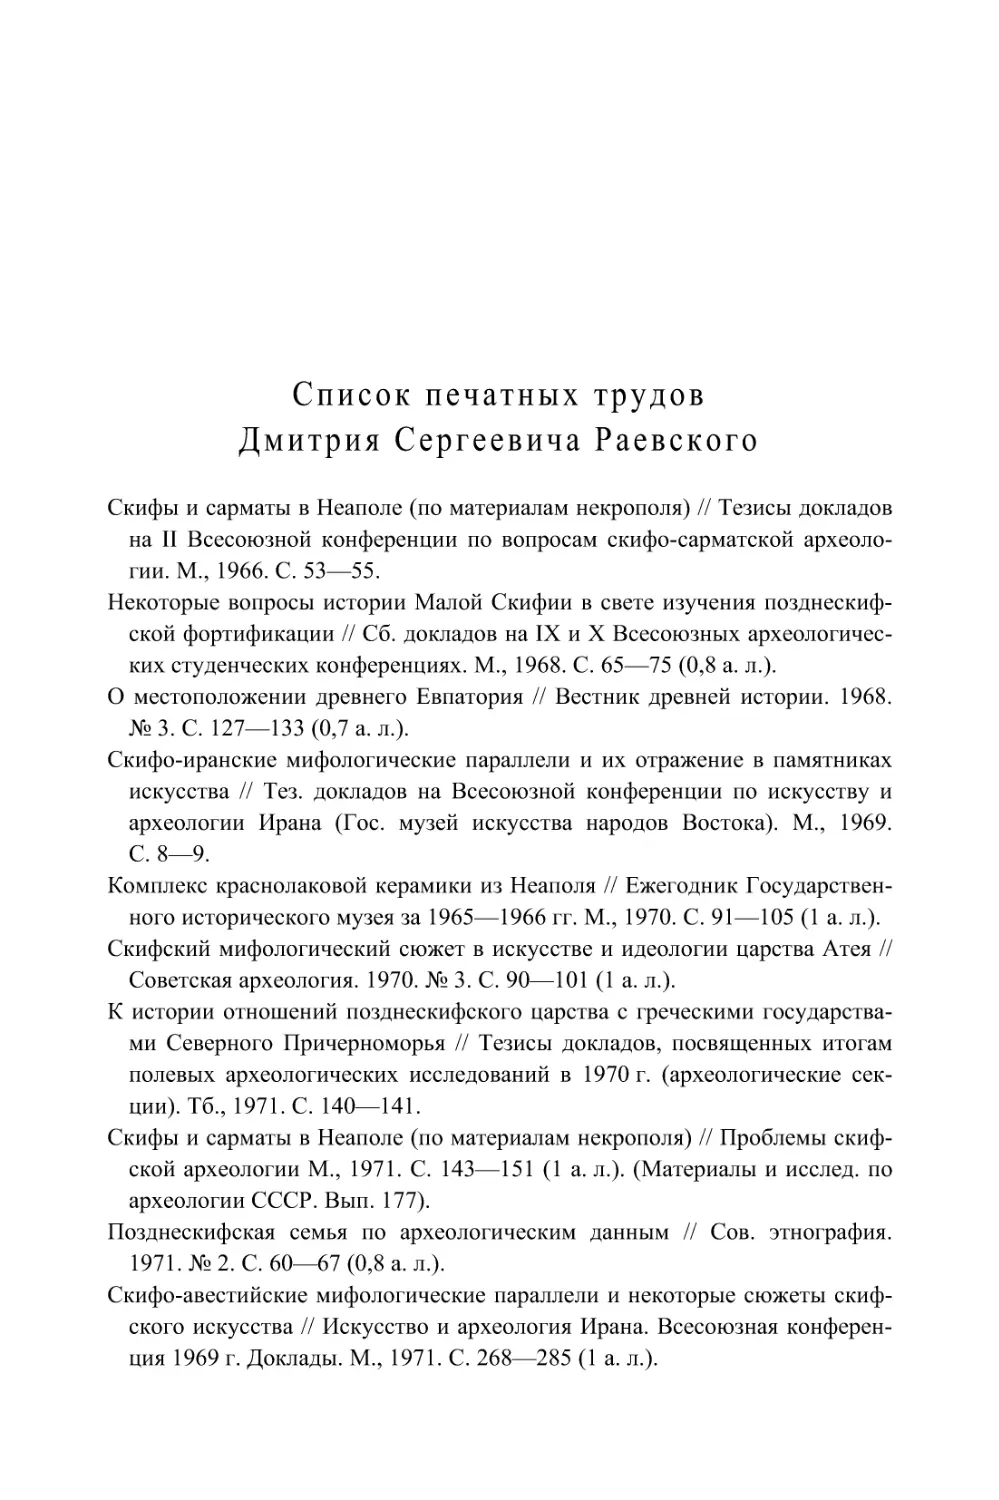 Список печатных трудов Д. С. Раевского